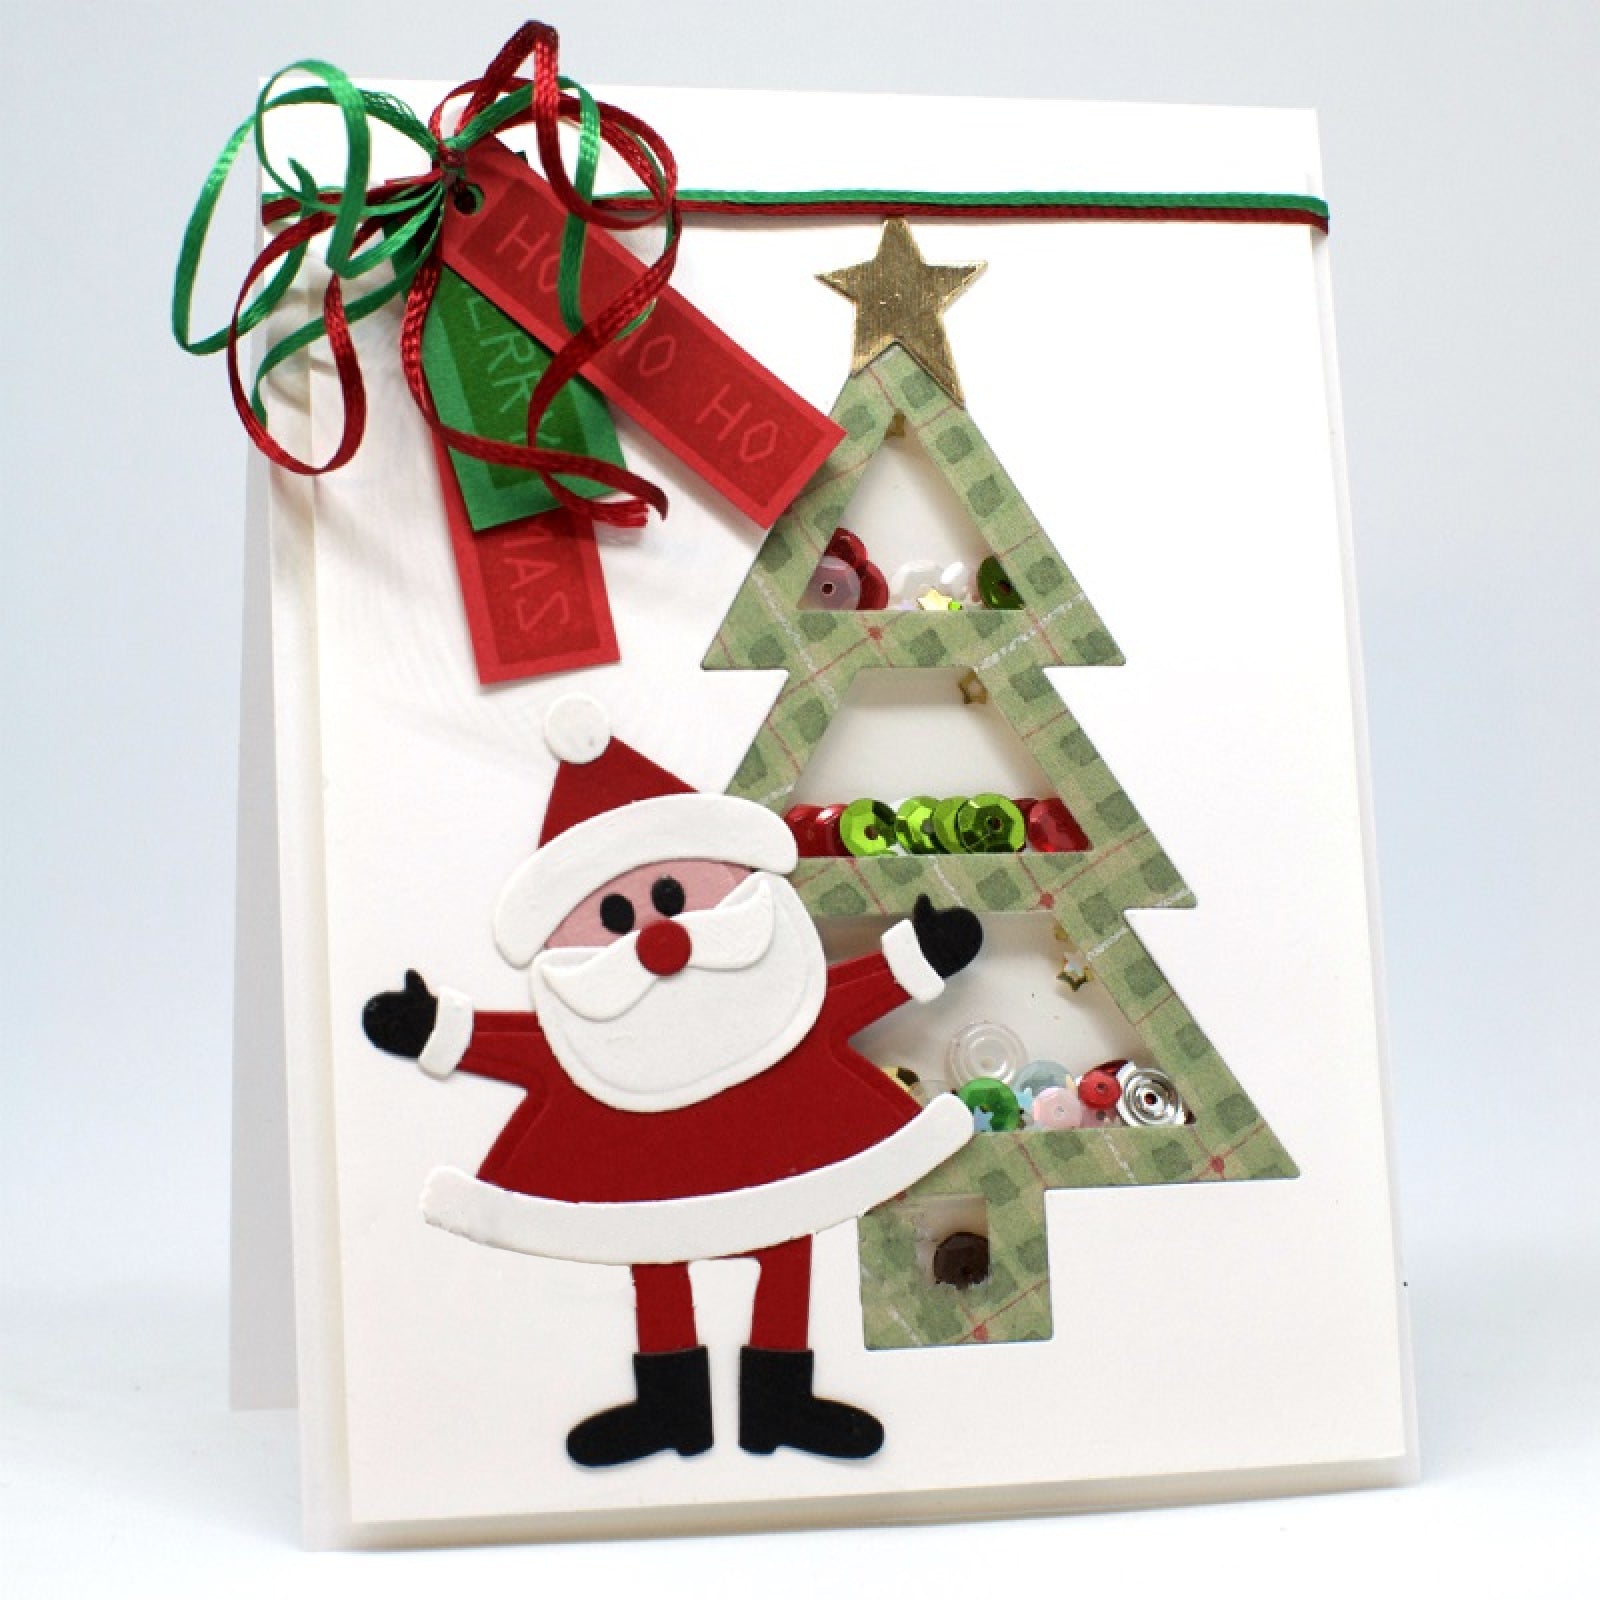 Merry Christmas Block Sentiment Words Cutting Dies – Noel Joy Season’s Greetings